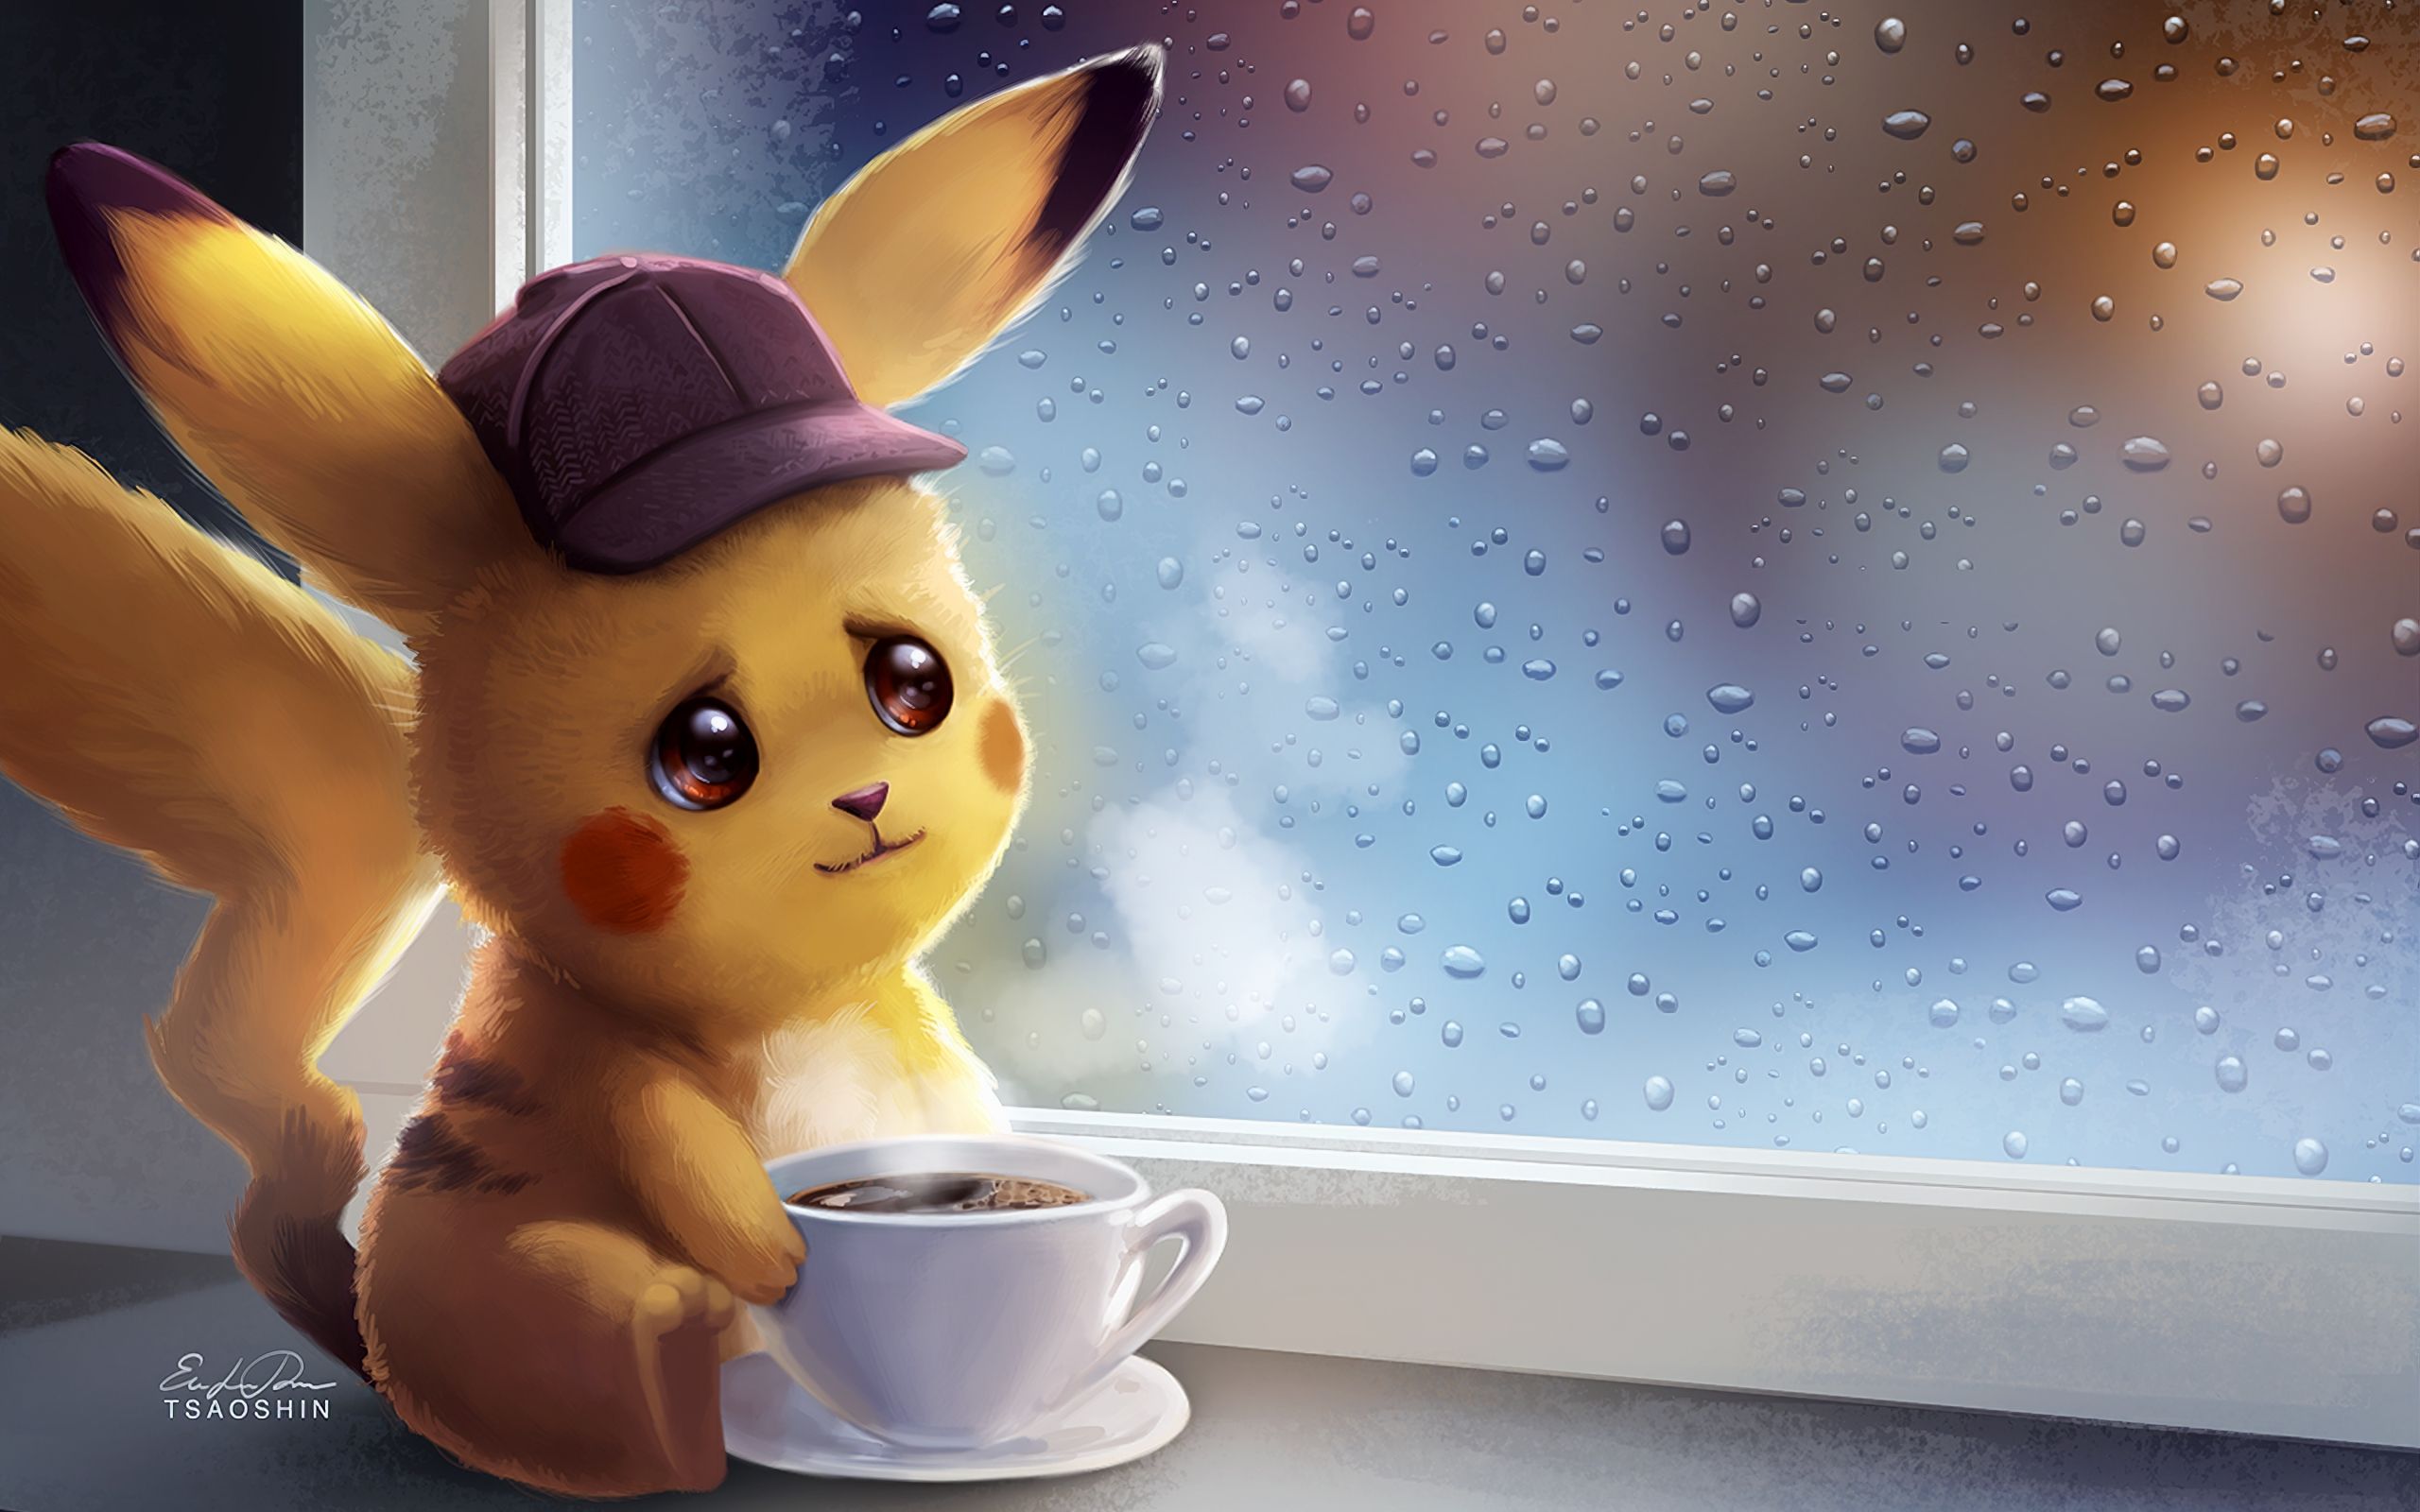 Coffee, Cup, Pikachu, Pokémon, Rain wallpaper